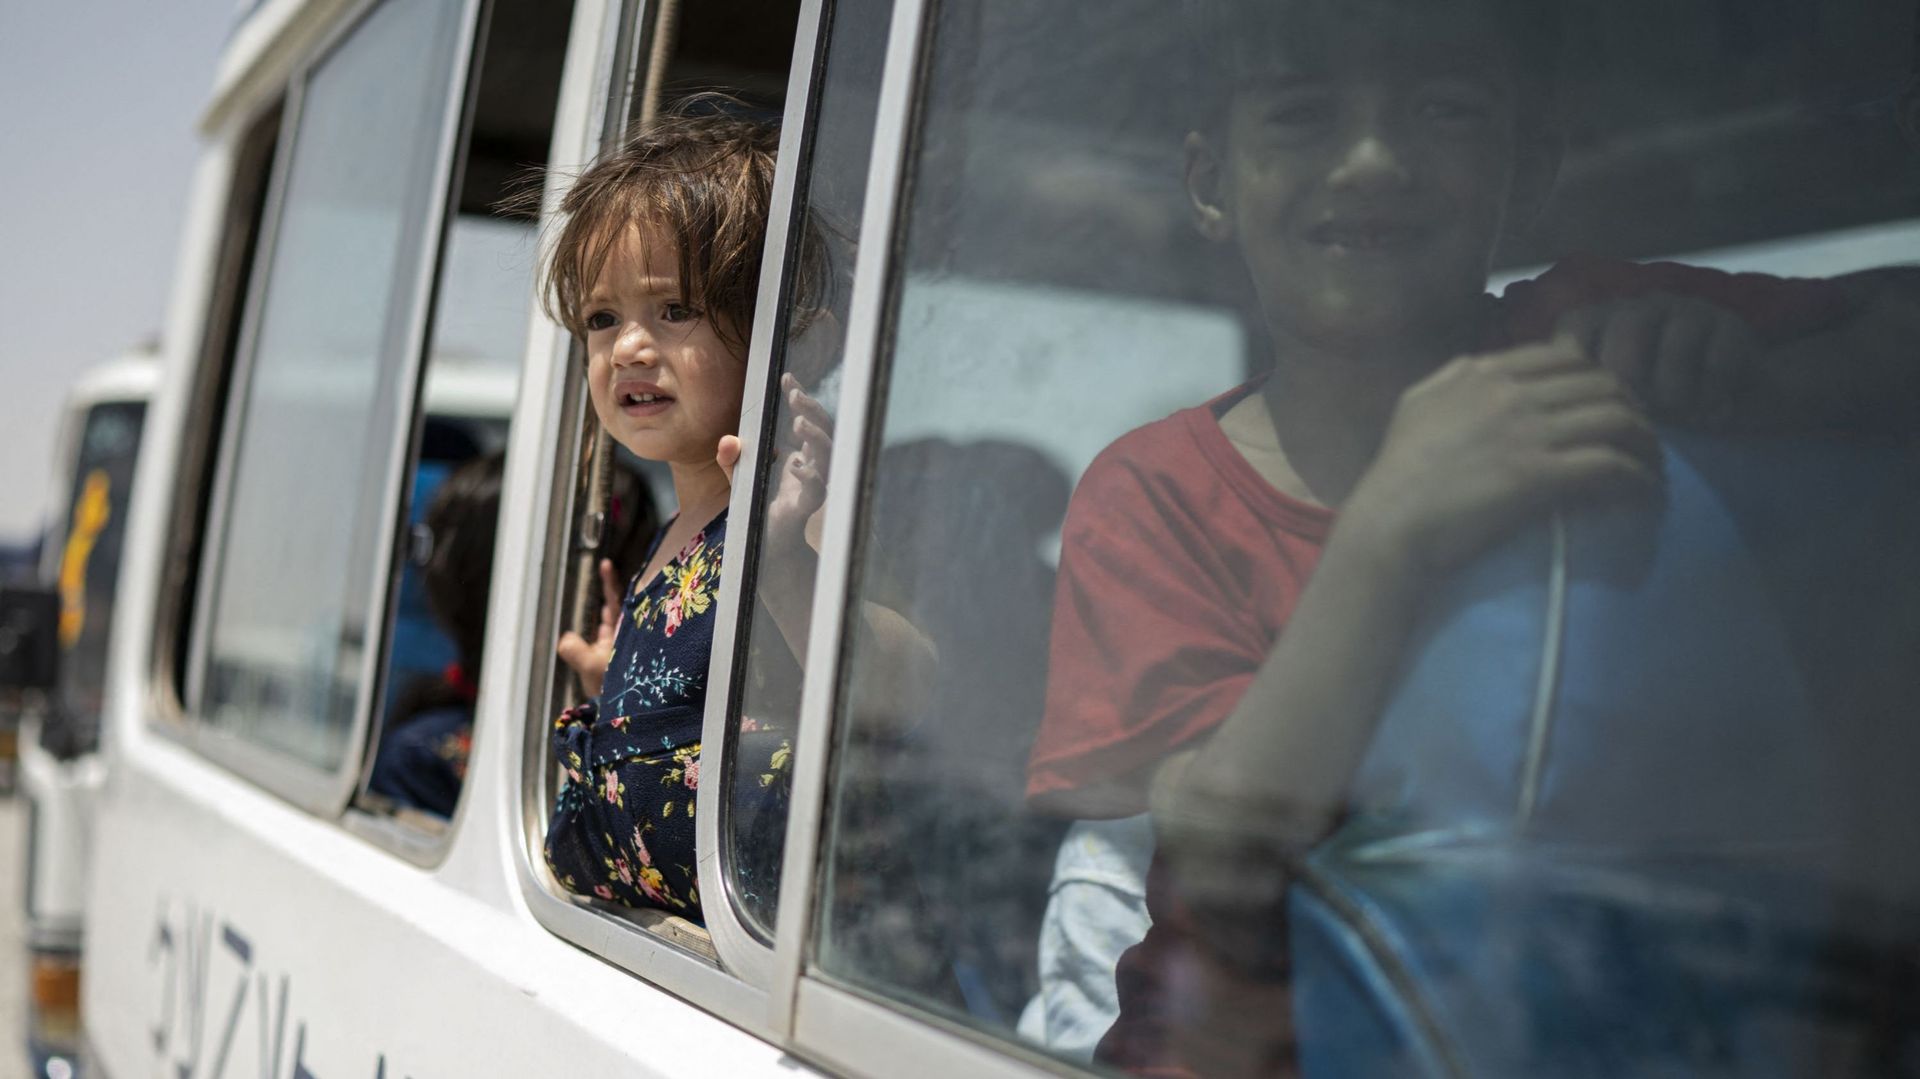 Des enfants afghans déplacés à l'intérieur du pays regardent par la fenêtre d'un bus alors qu'ils rentrent chez eux à l'est, au camp du Haut Commissariat des Nations Unies pour les réfugiés (HCR) dans la banlieue de Kaboul, le 28 juillet 2022.